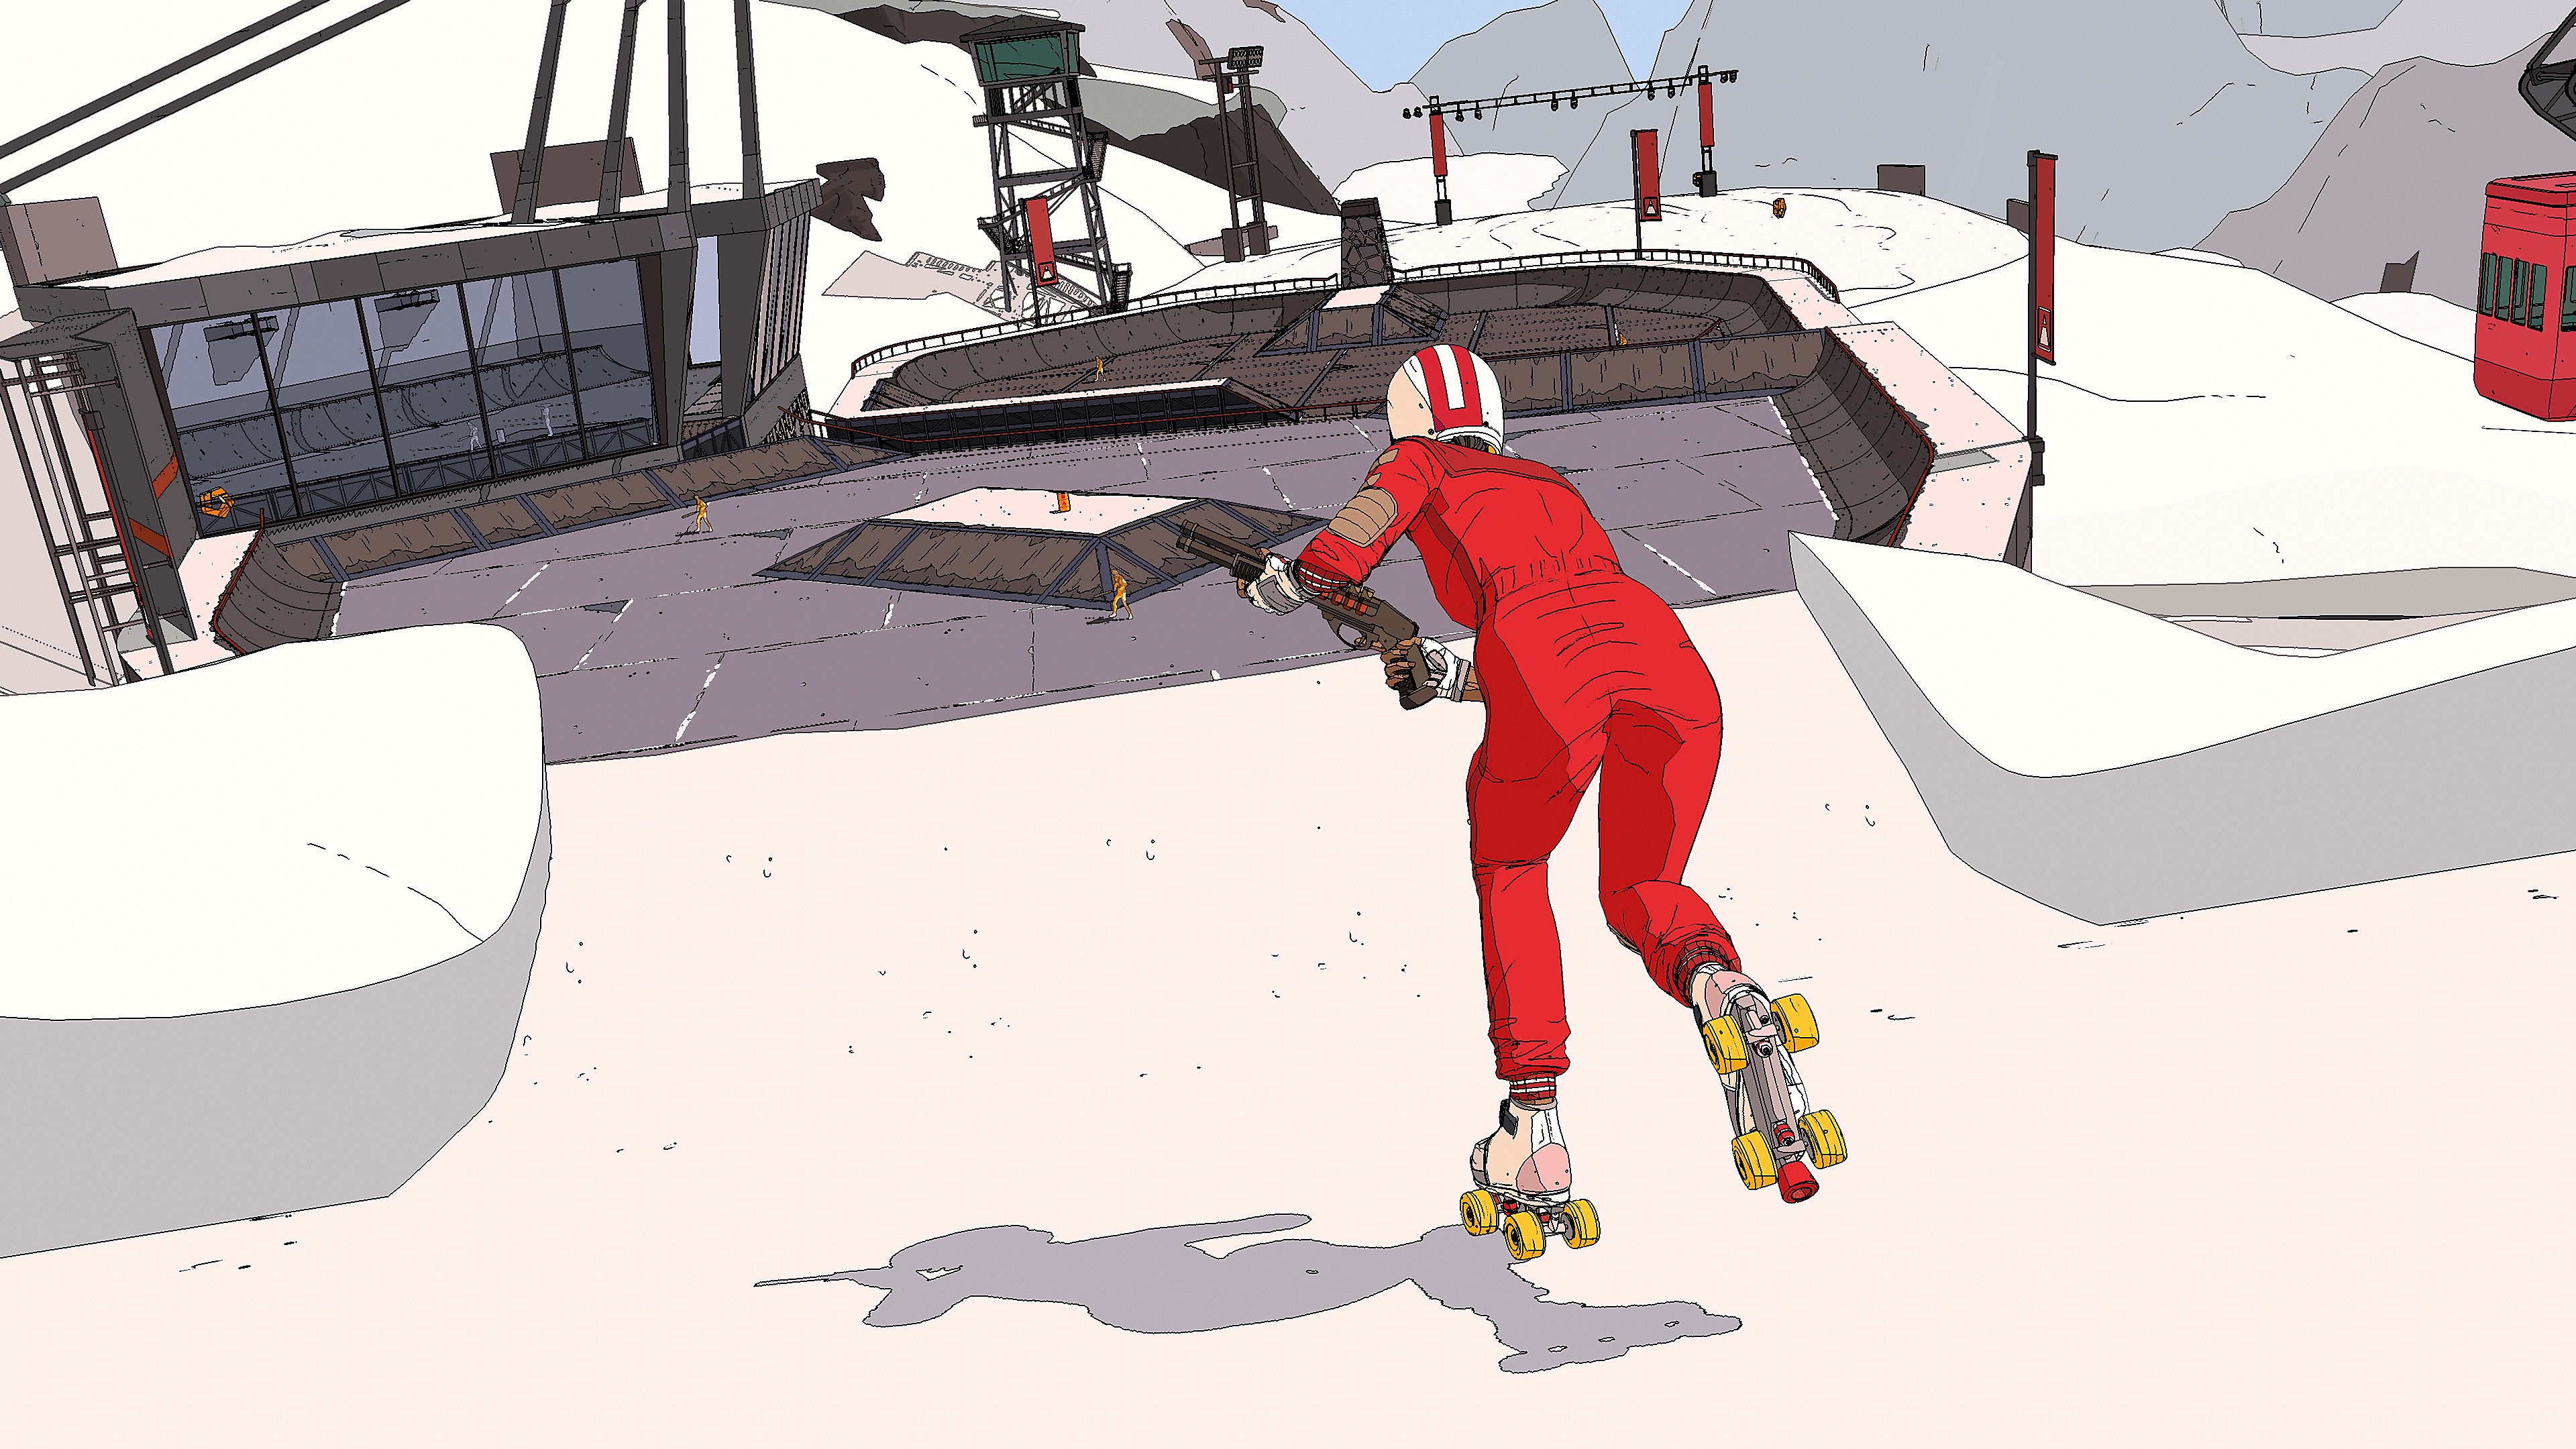 Rollerdrome - Capture d'écran montrant un patineur portant une combinaison et un casque, un fusil à pompe à la main